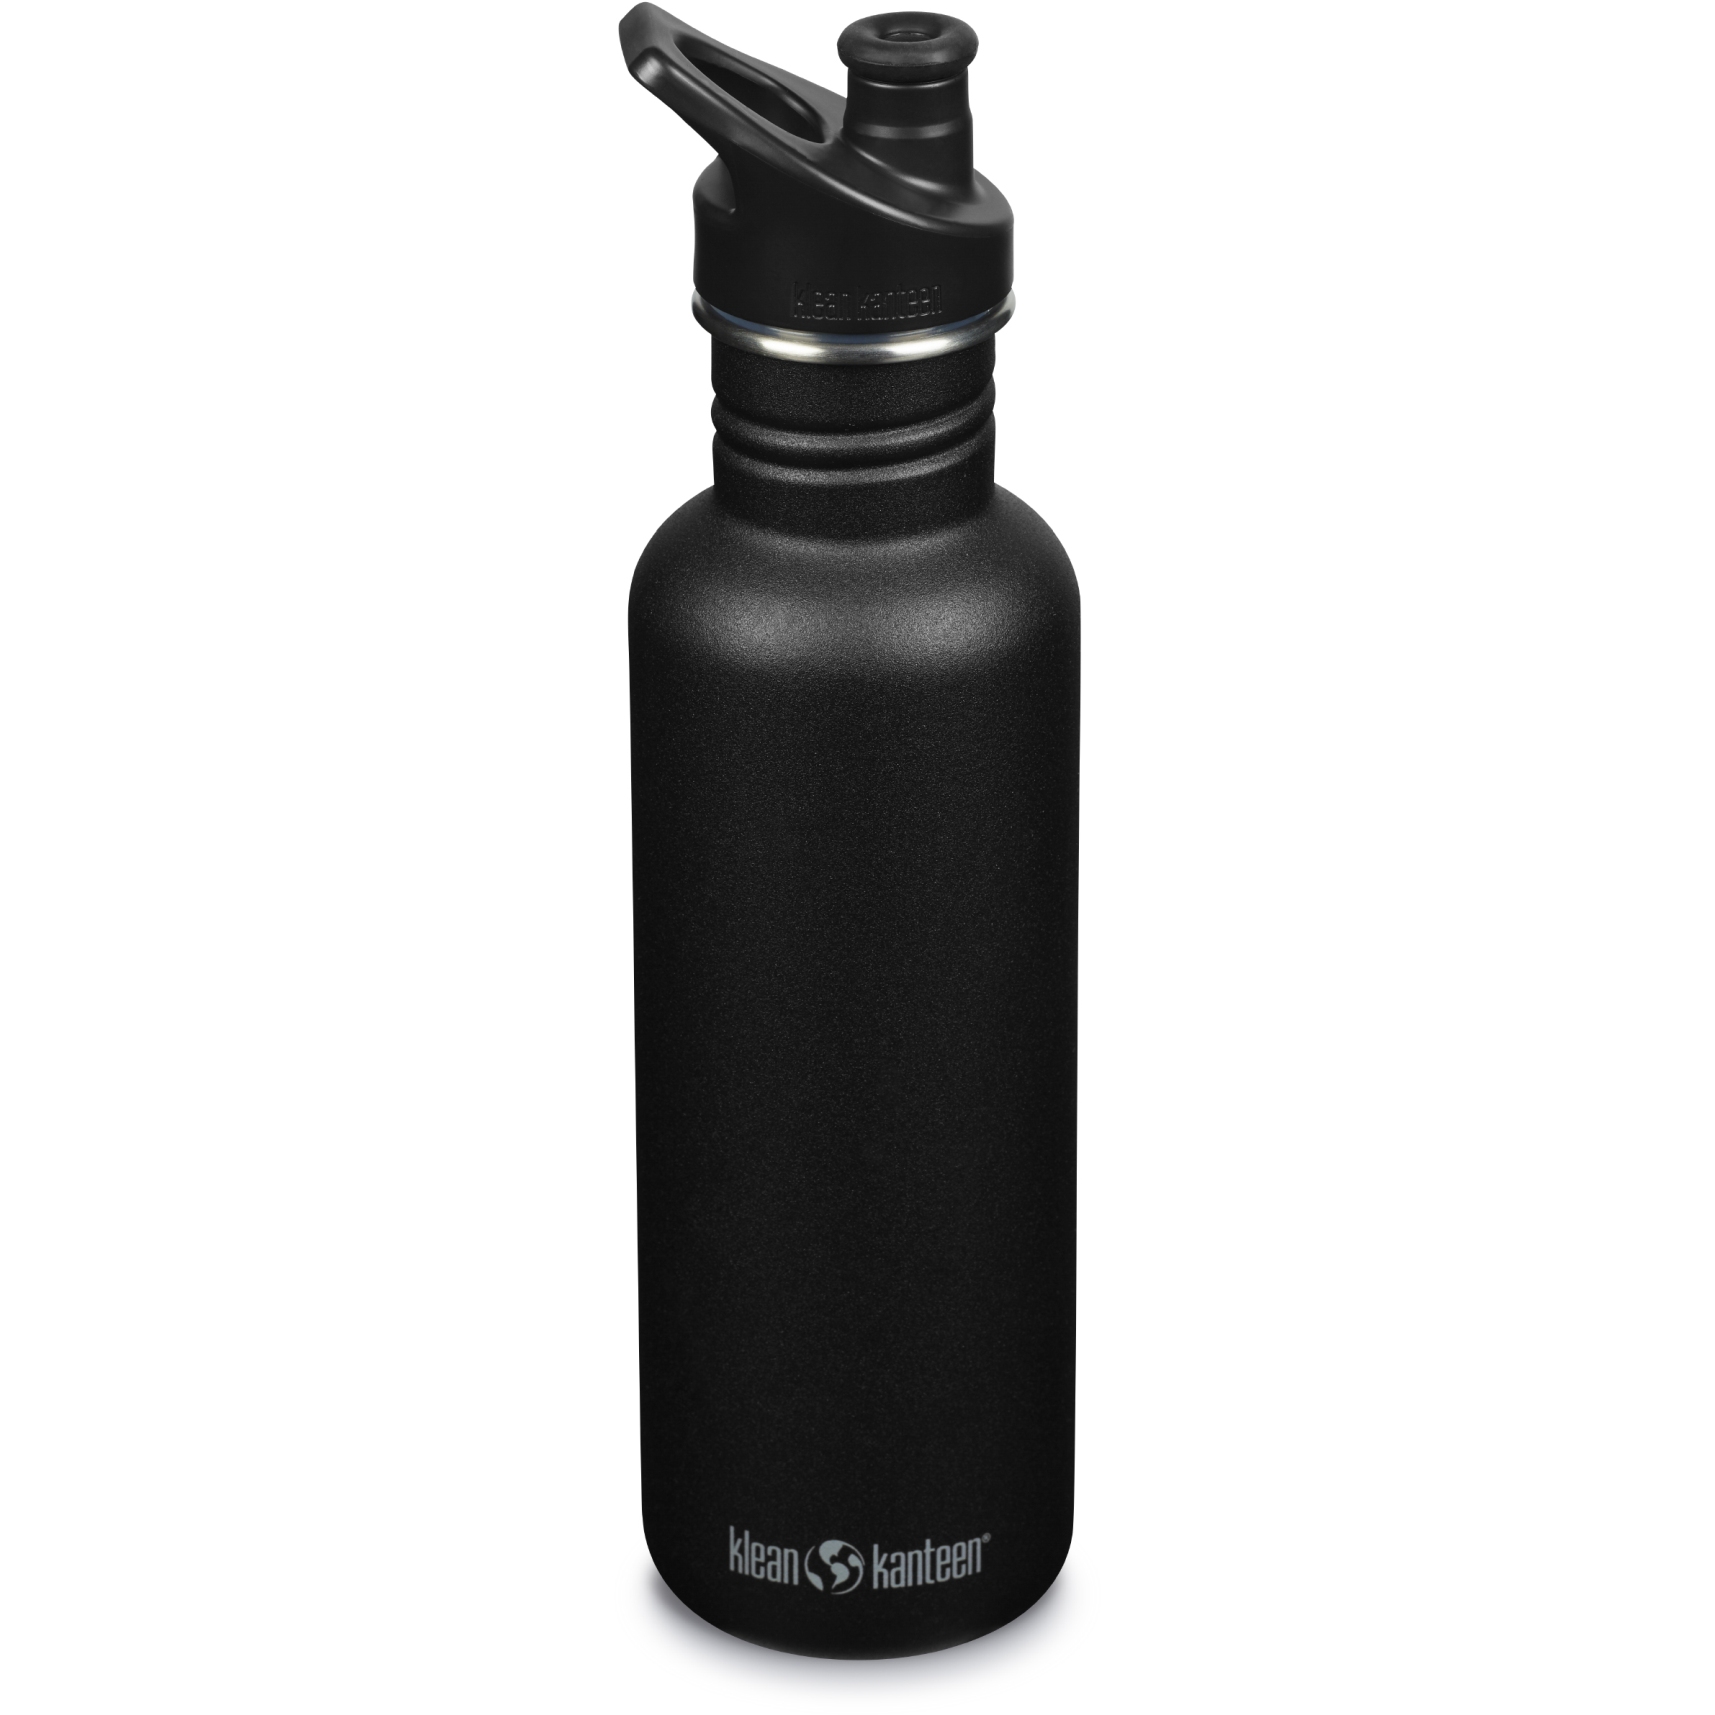 Produktbild von Klean Kanteen Classic Trinkflasche mit Sport Cap 800ml - schwarz